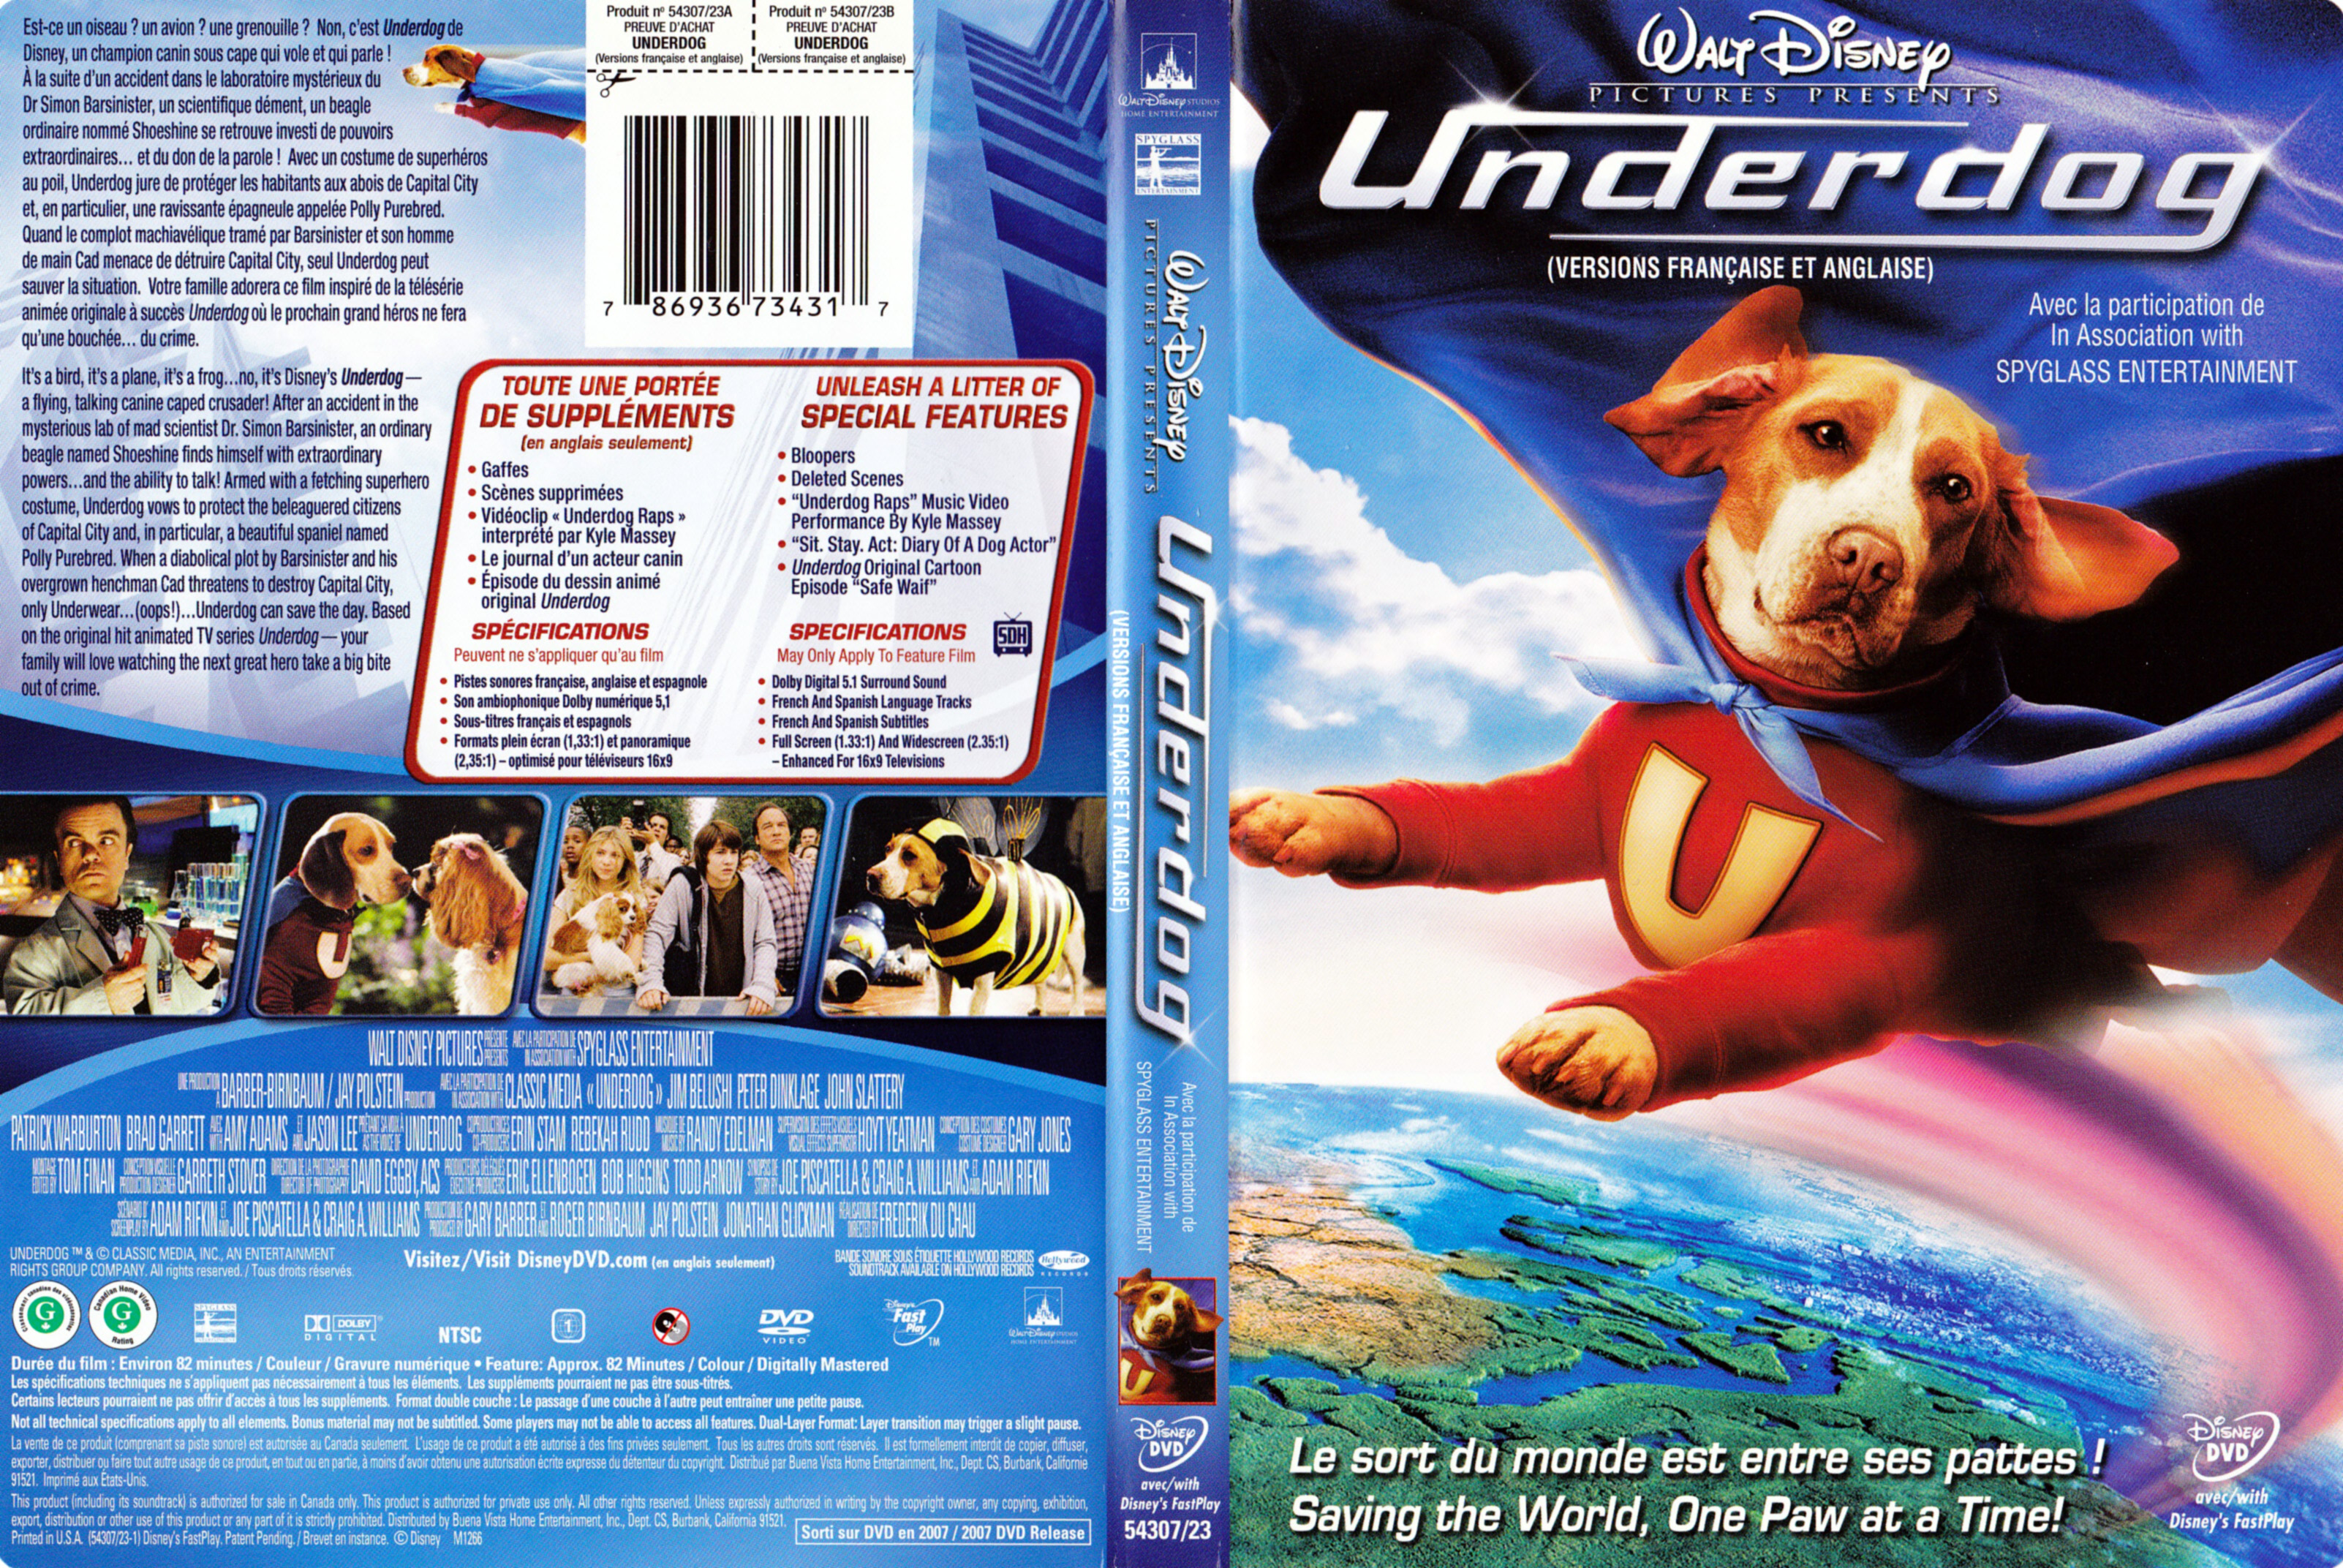 Jaquette DVD Underdog (Canadienne)